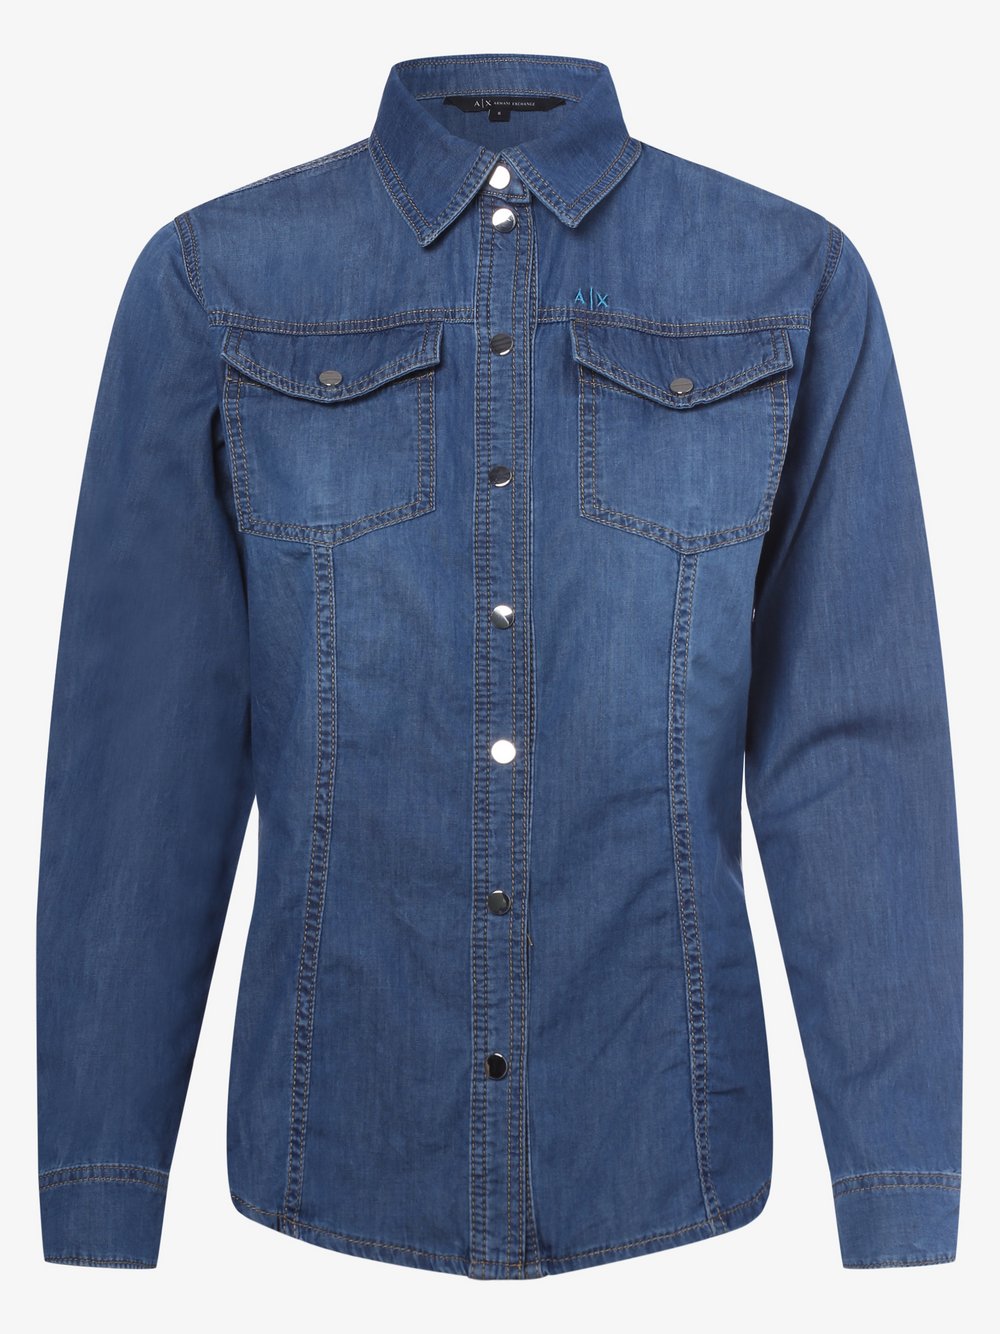 Armani Exchange - Damska koszula jeansowa, niebieski